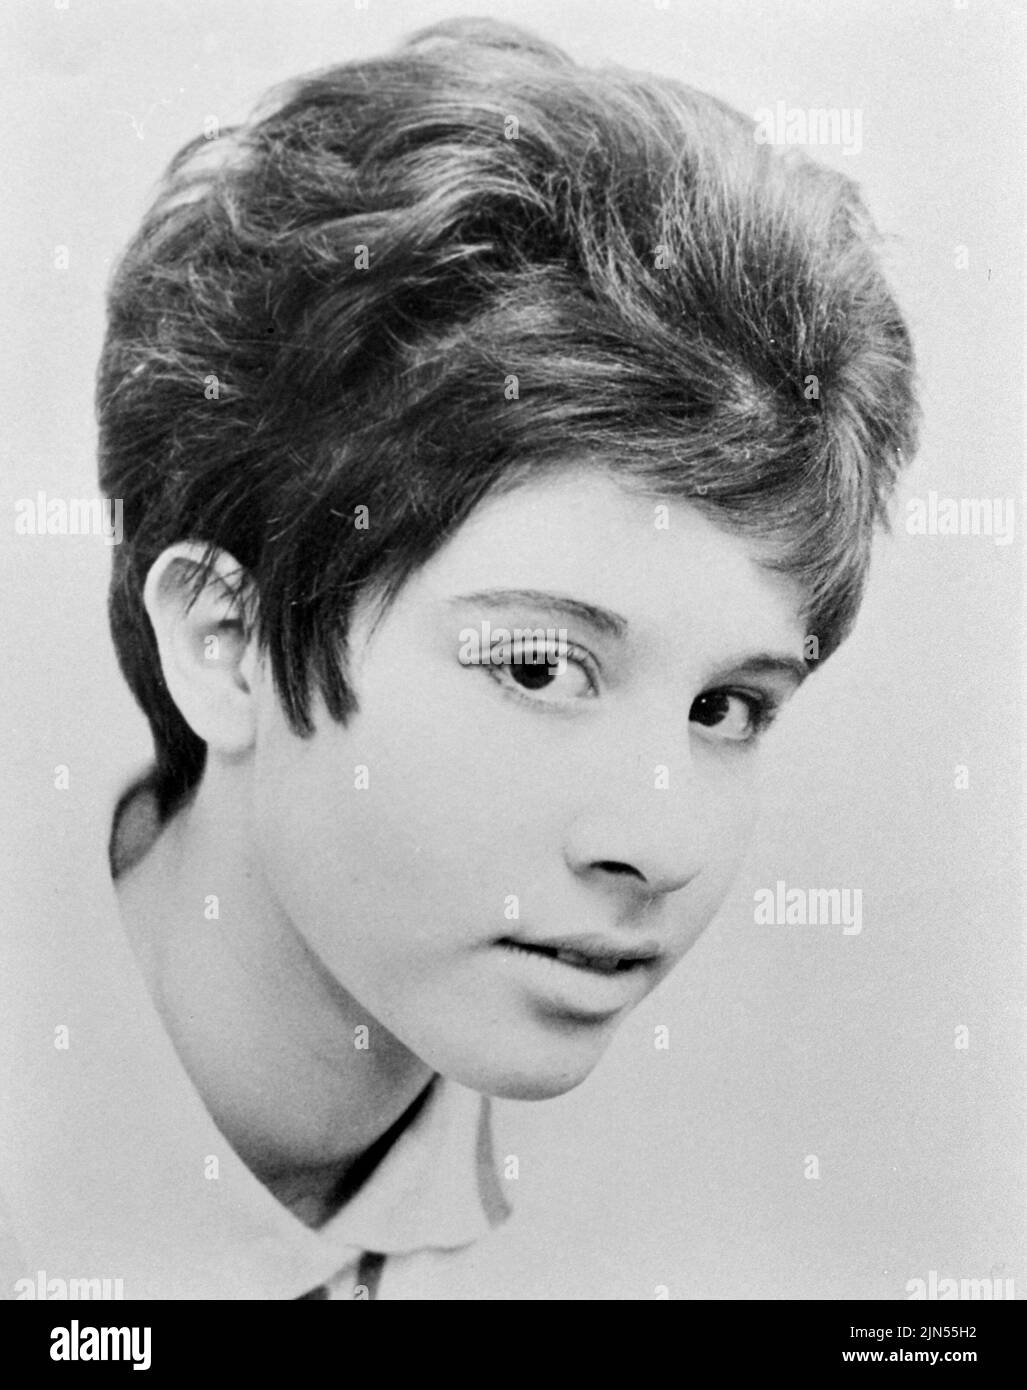 HELEN SHAPIRO Foto promozionale del cantante pop inglese nel 1961 Foto Stock